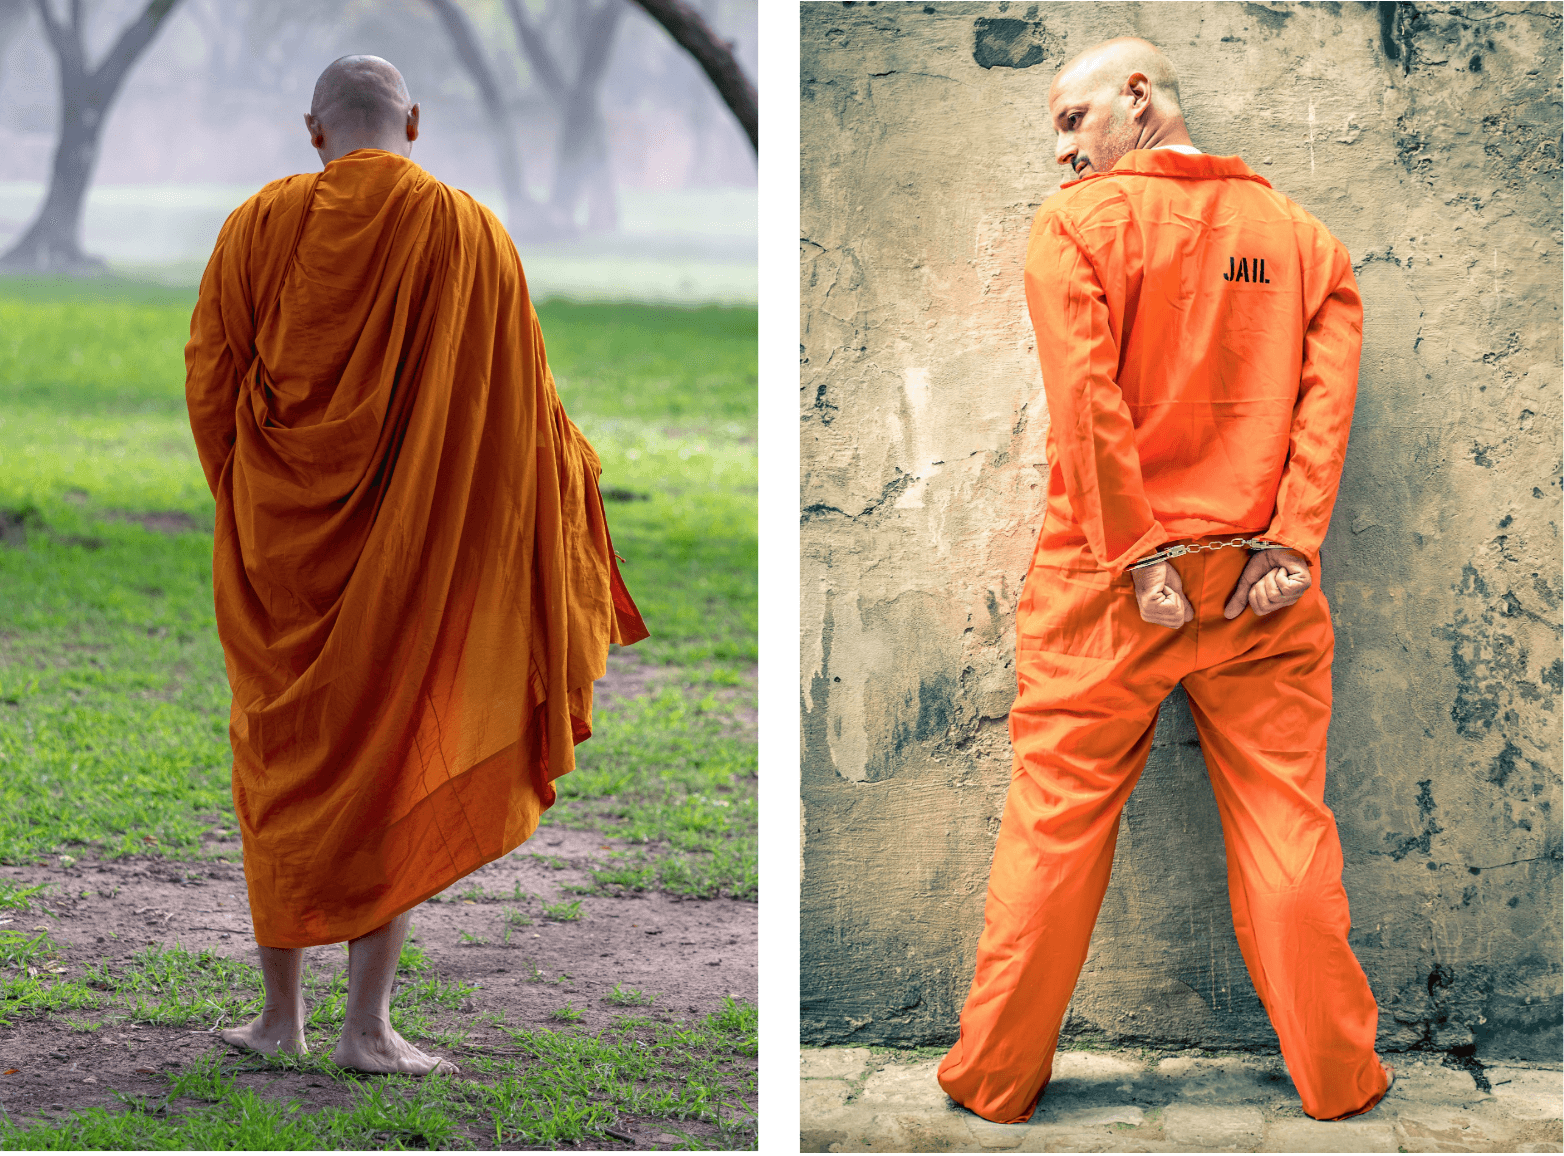 Одежда буддистов